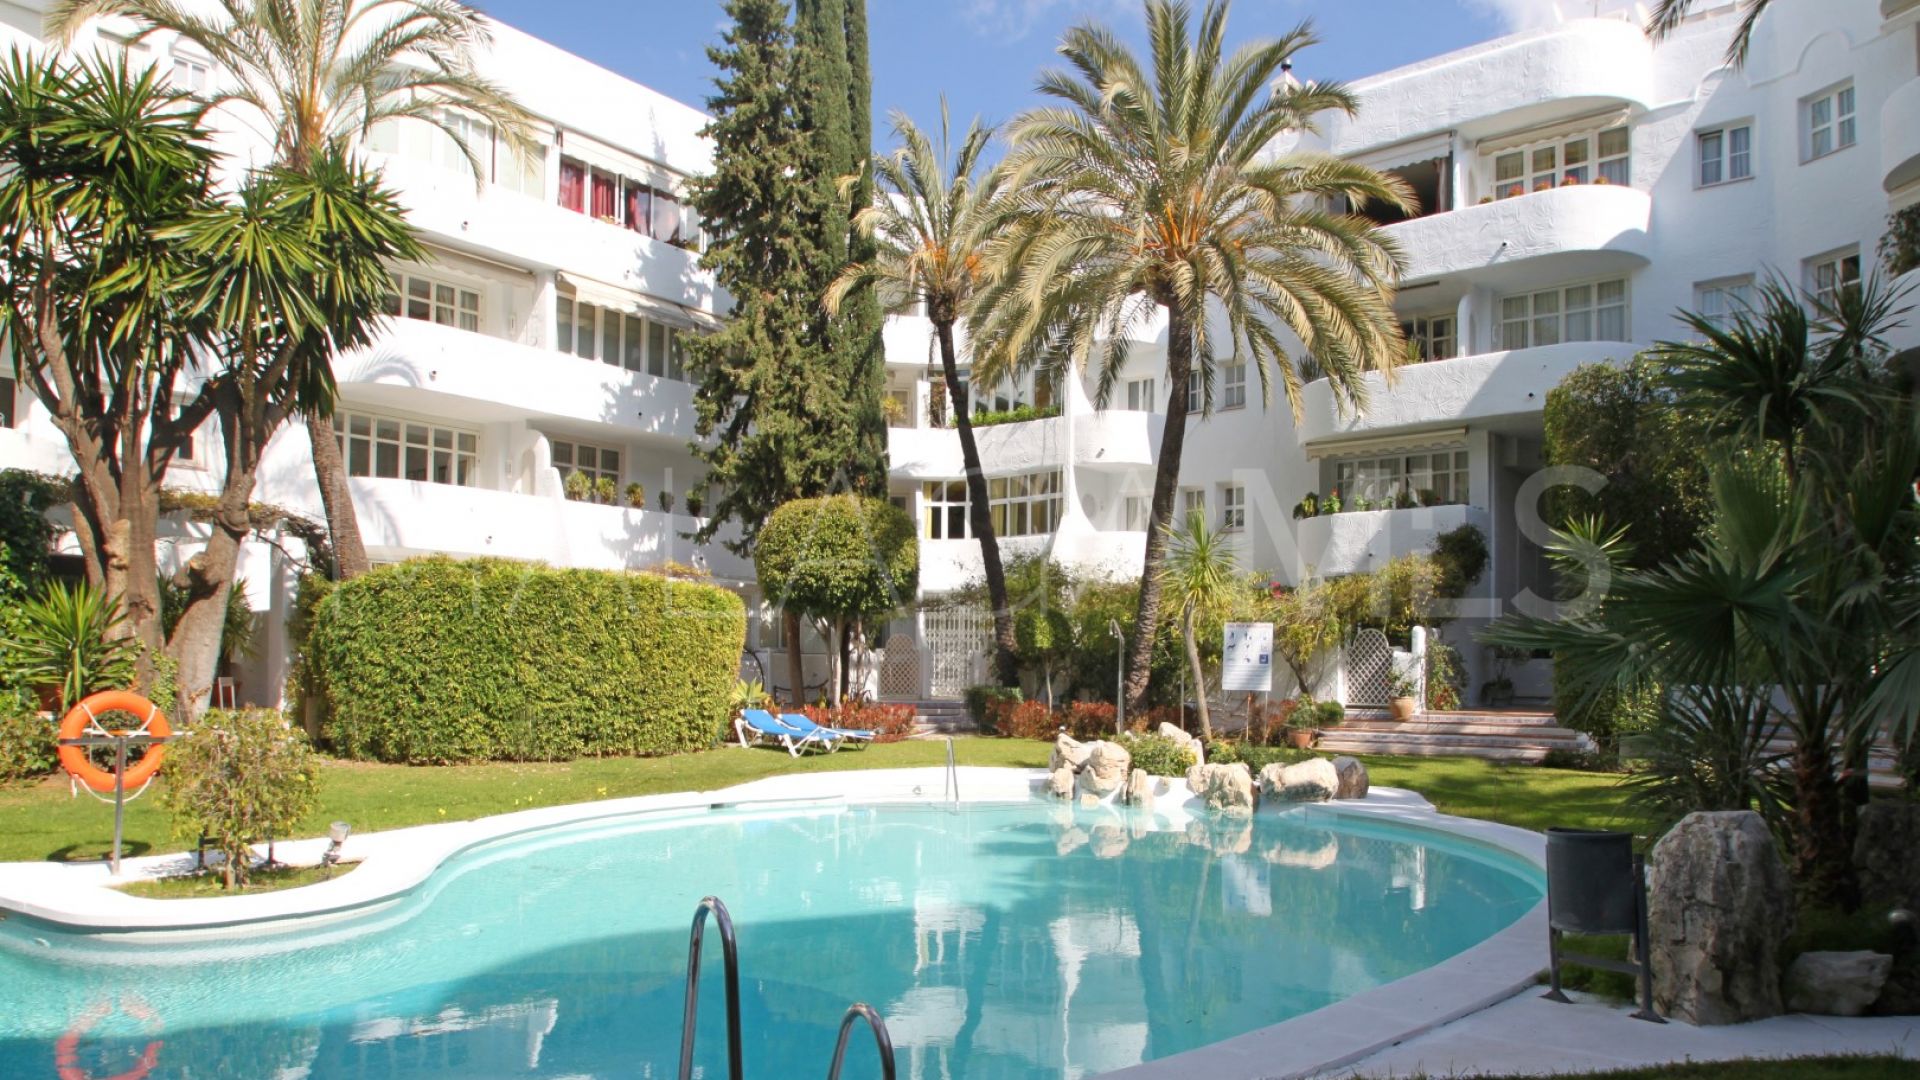 Apartamento de 3 bedrooms for sale in Marbella Real